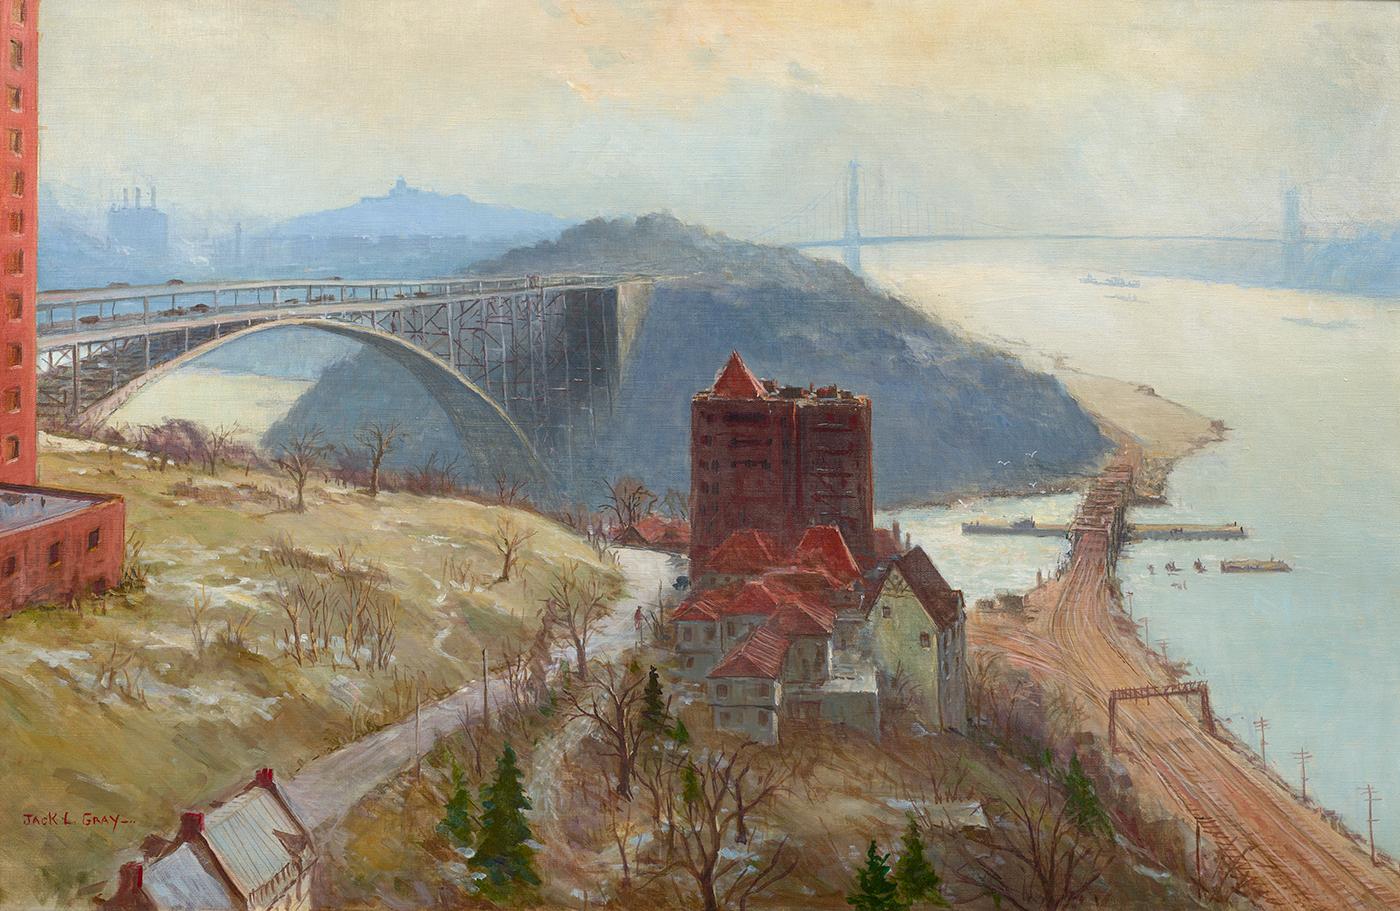 Jack Lorimer Gray Landscape Painting - Spuyten Duyvil (Bridges on the Hudson)